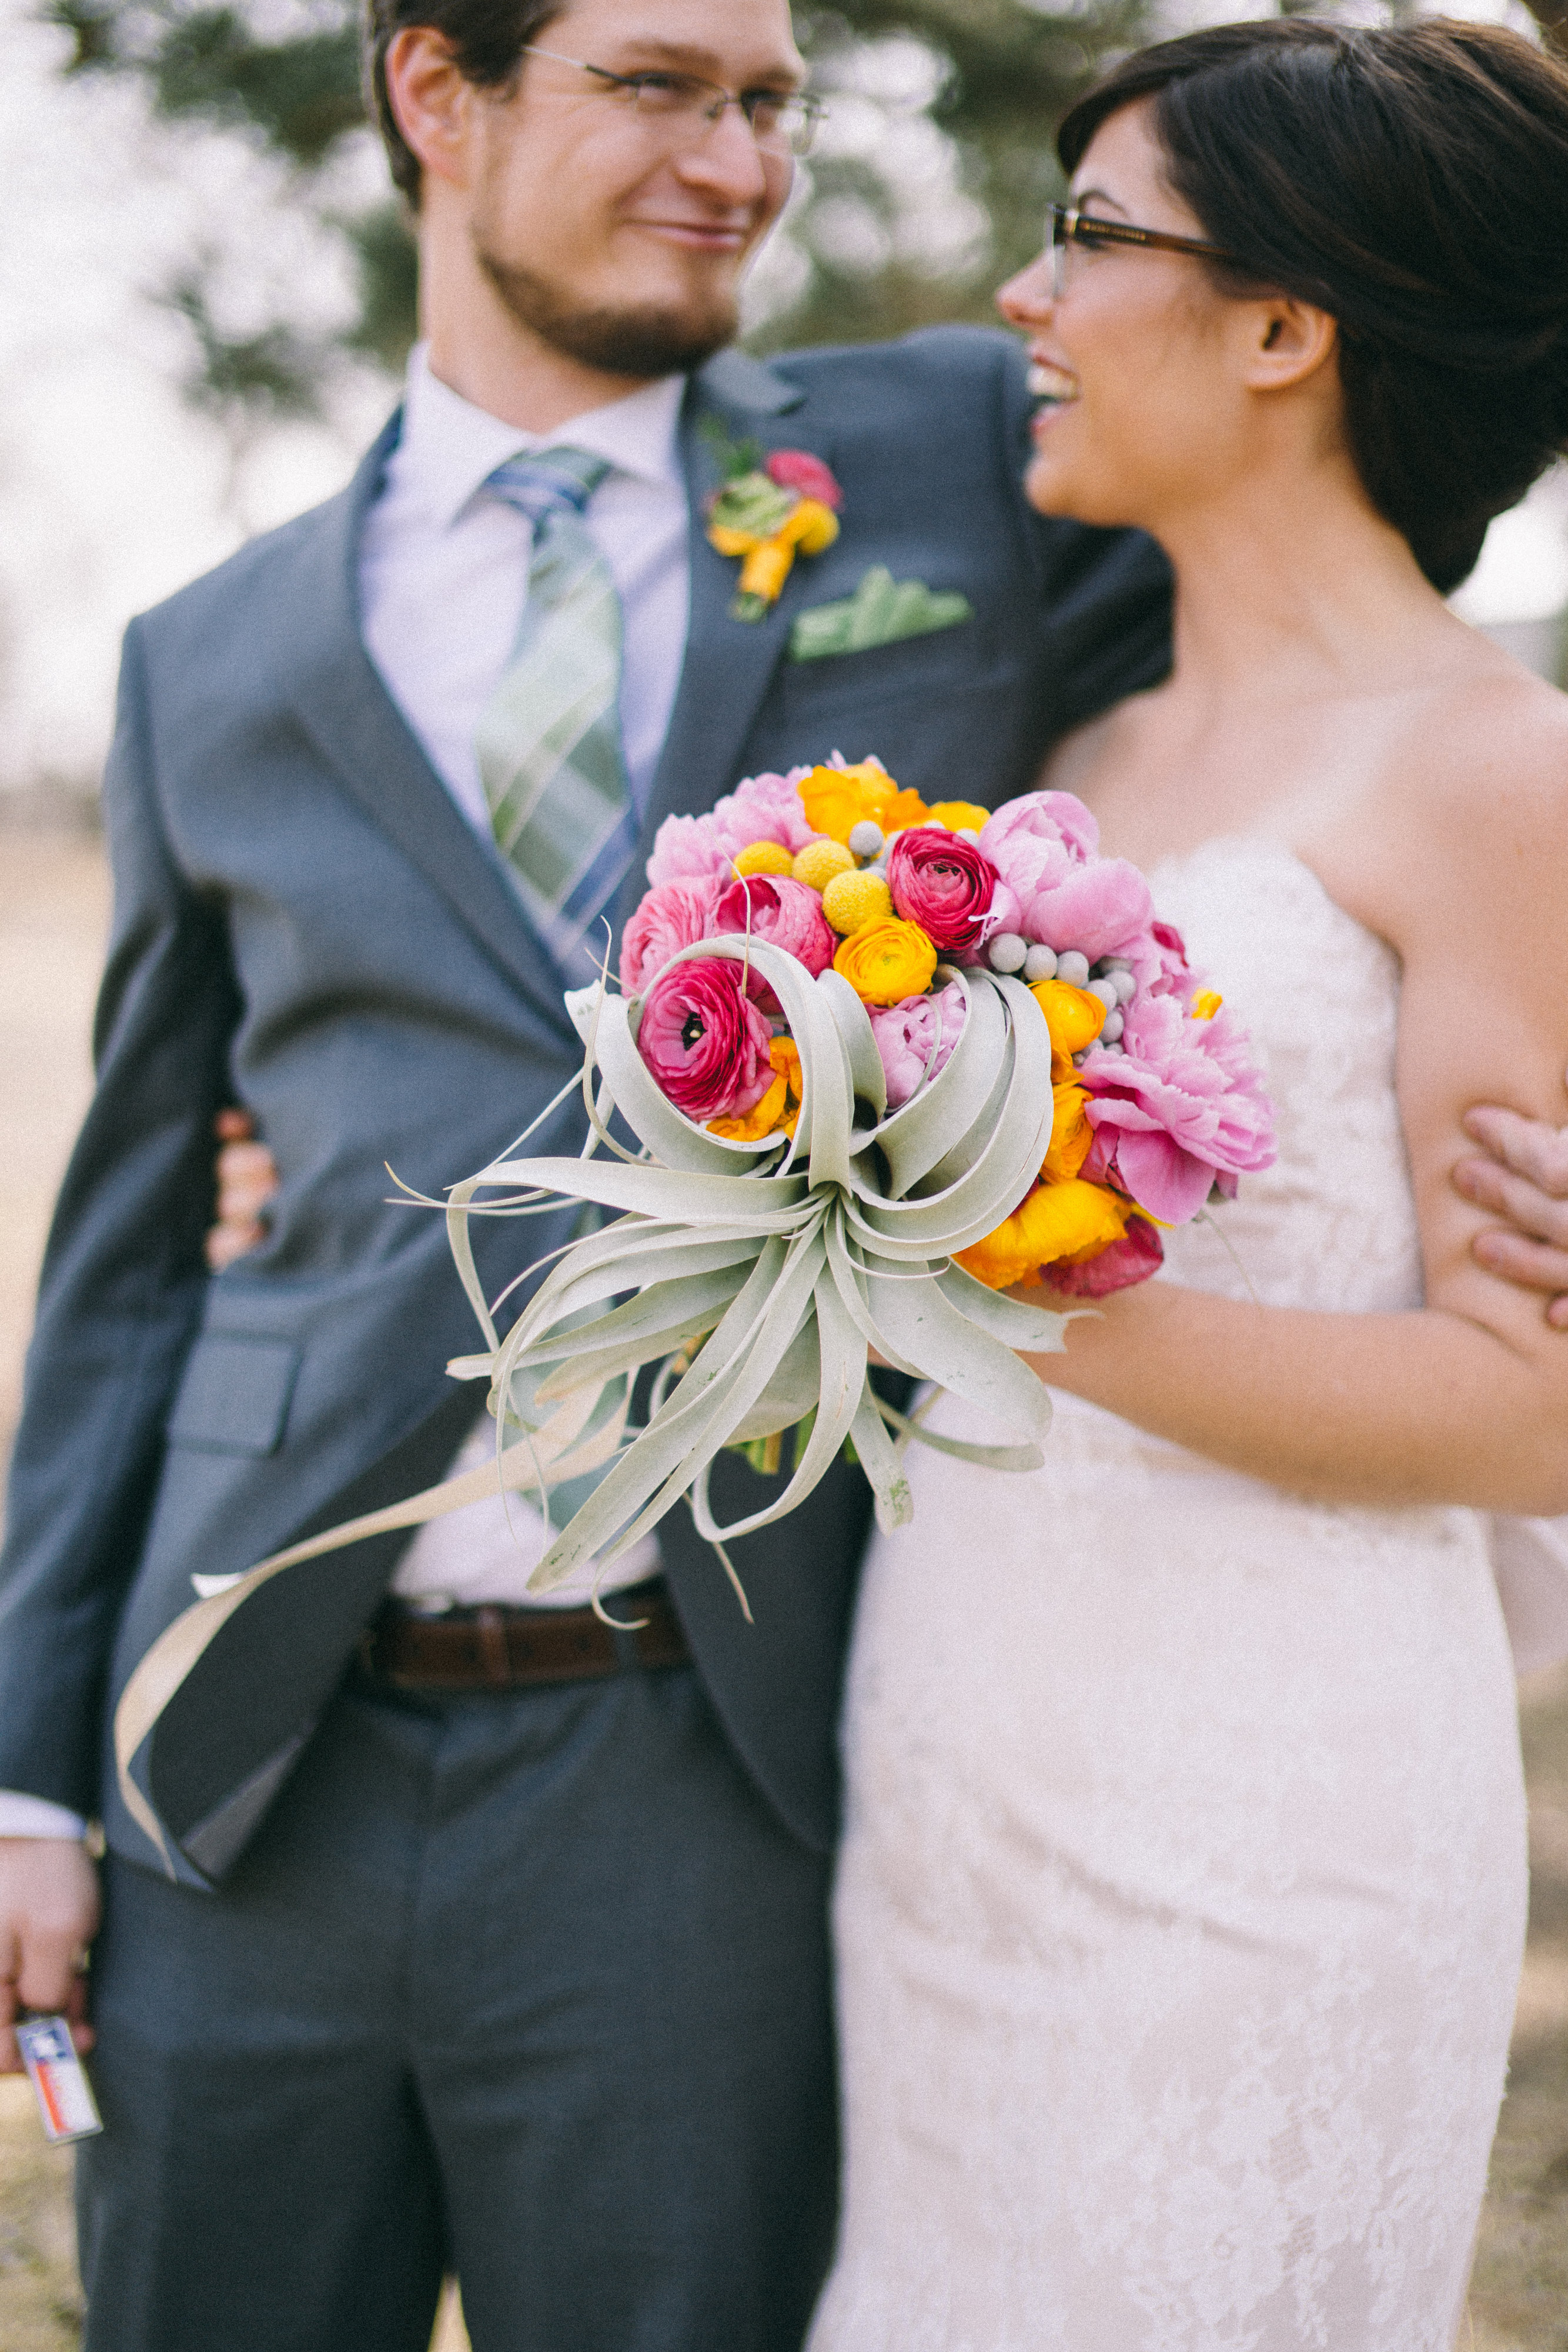 colorful succulent wedding bouquet